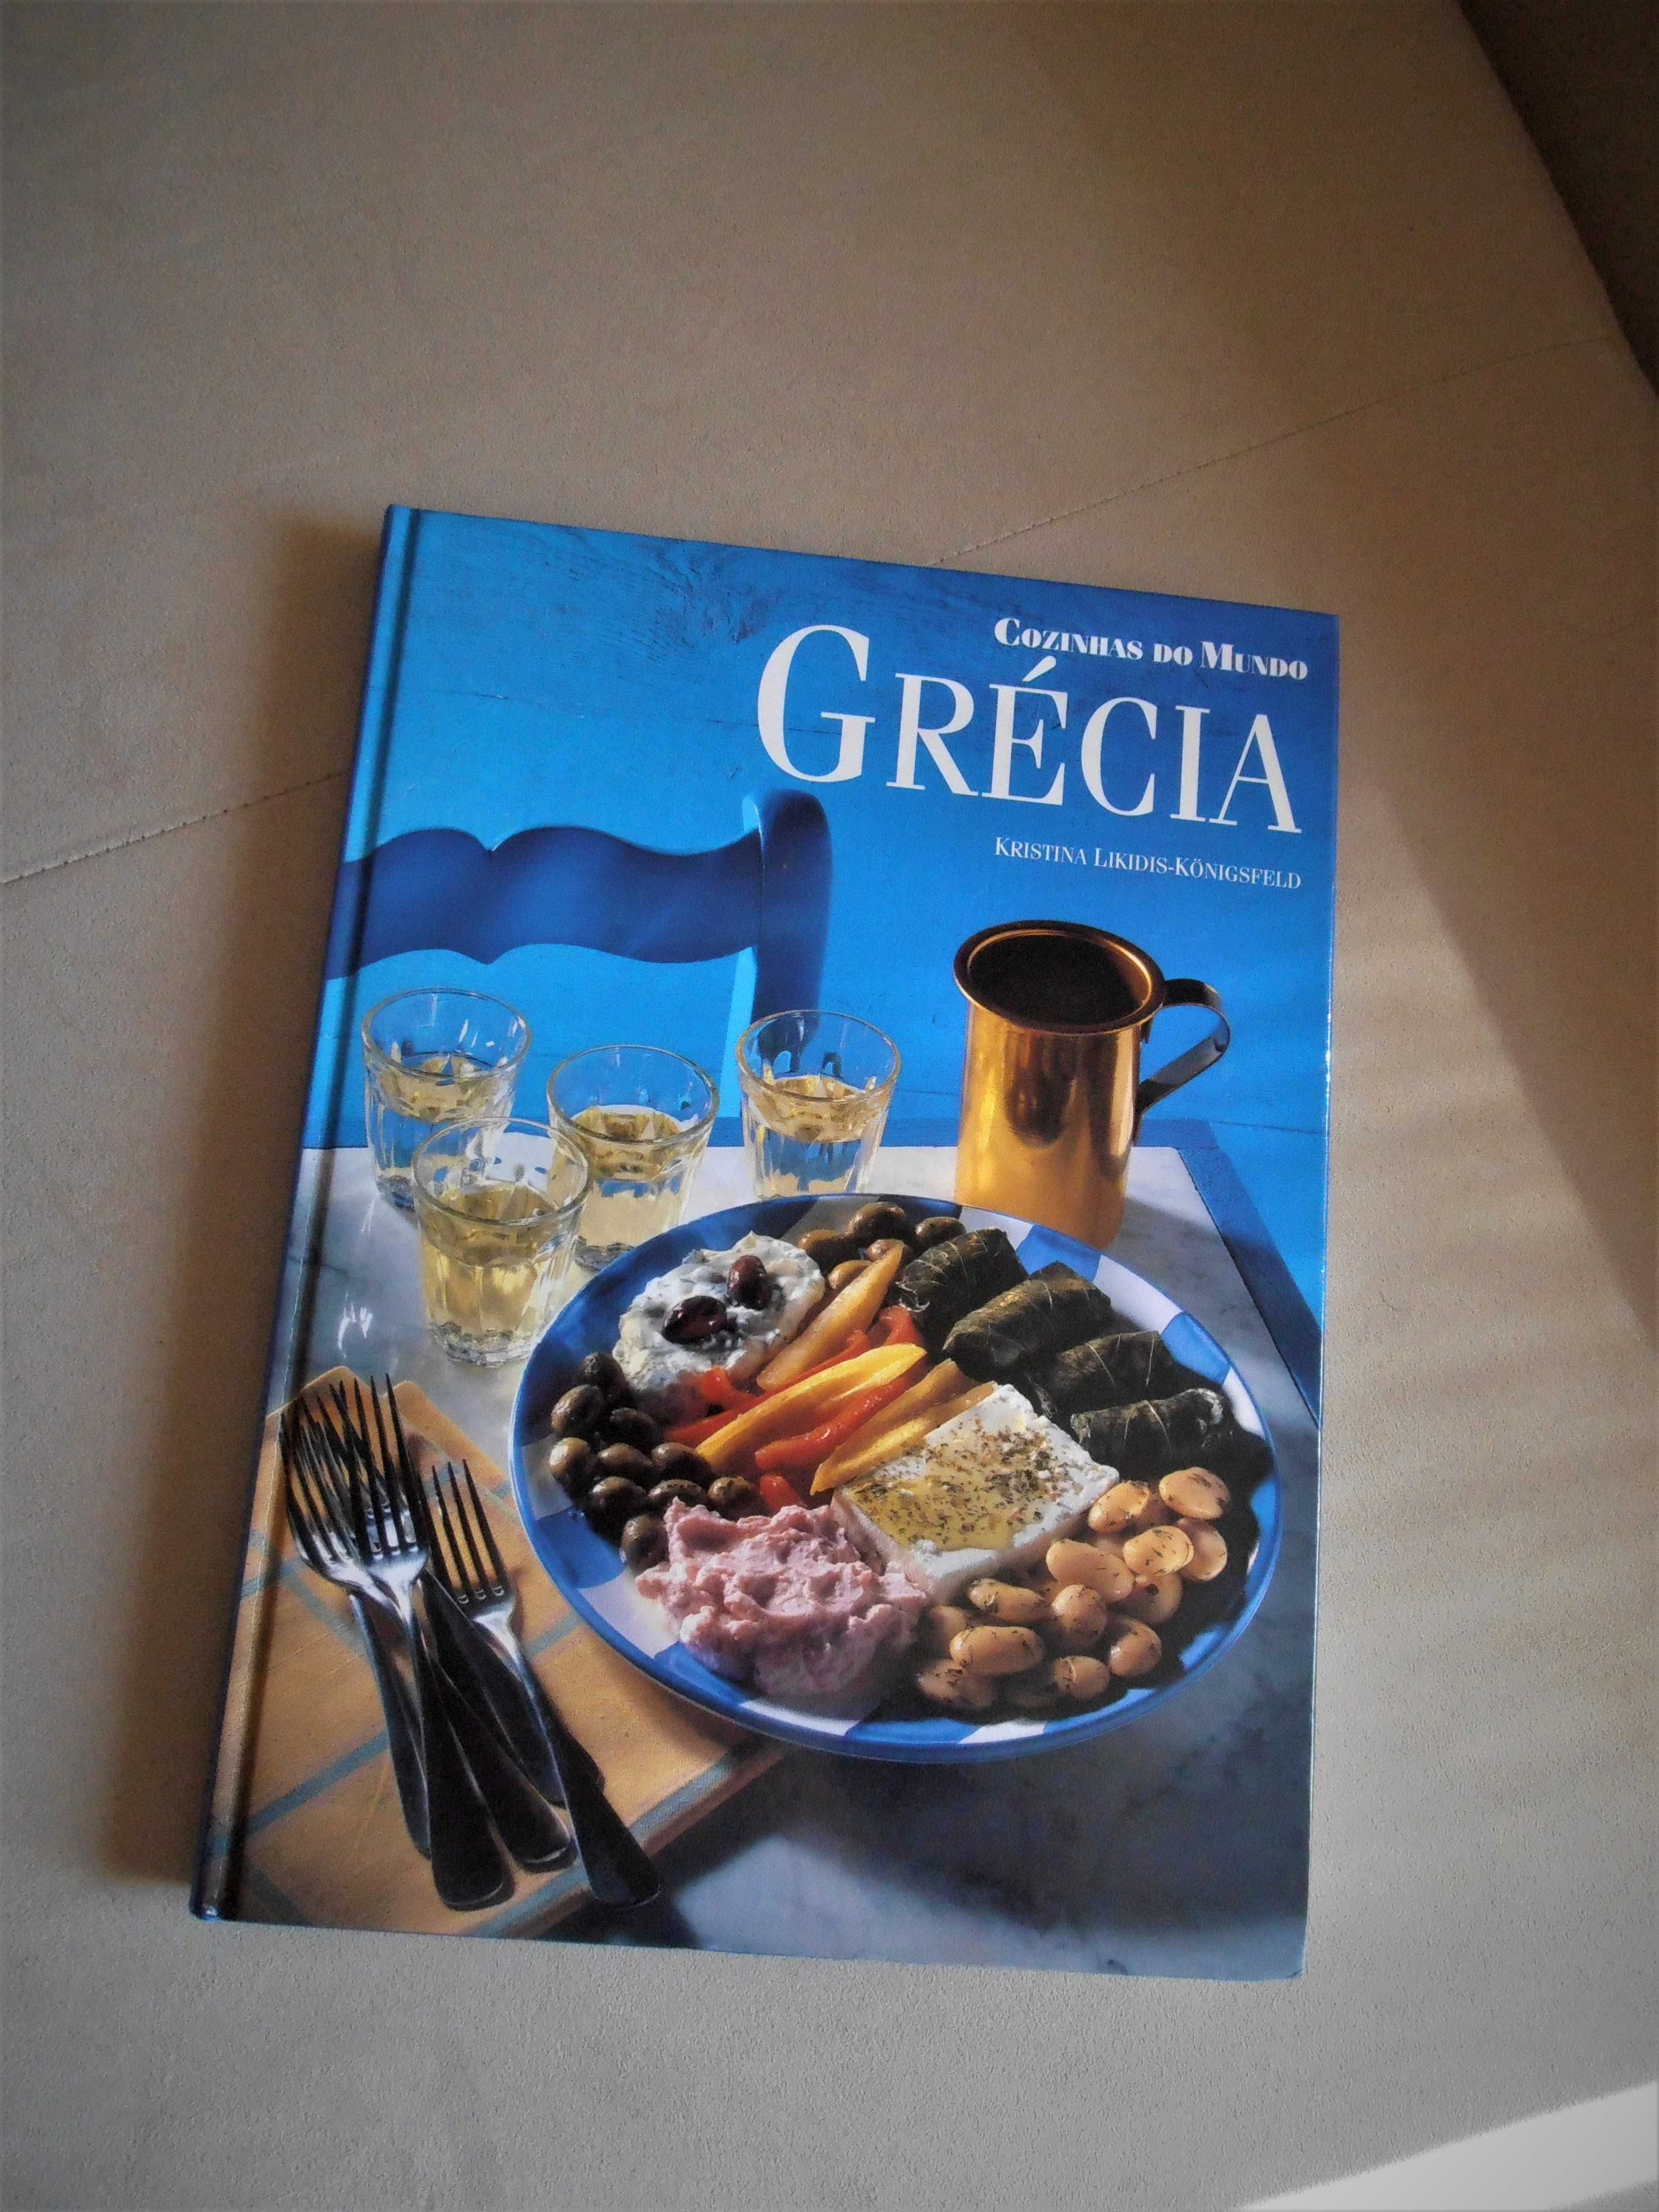 7 livros sobre a "Gastronomia de diversos Países".